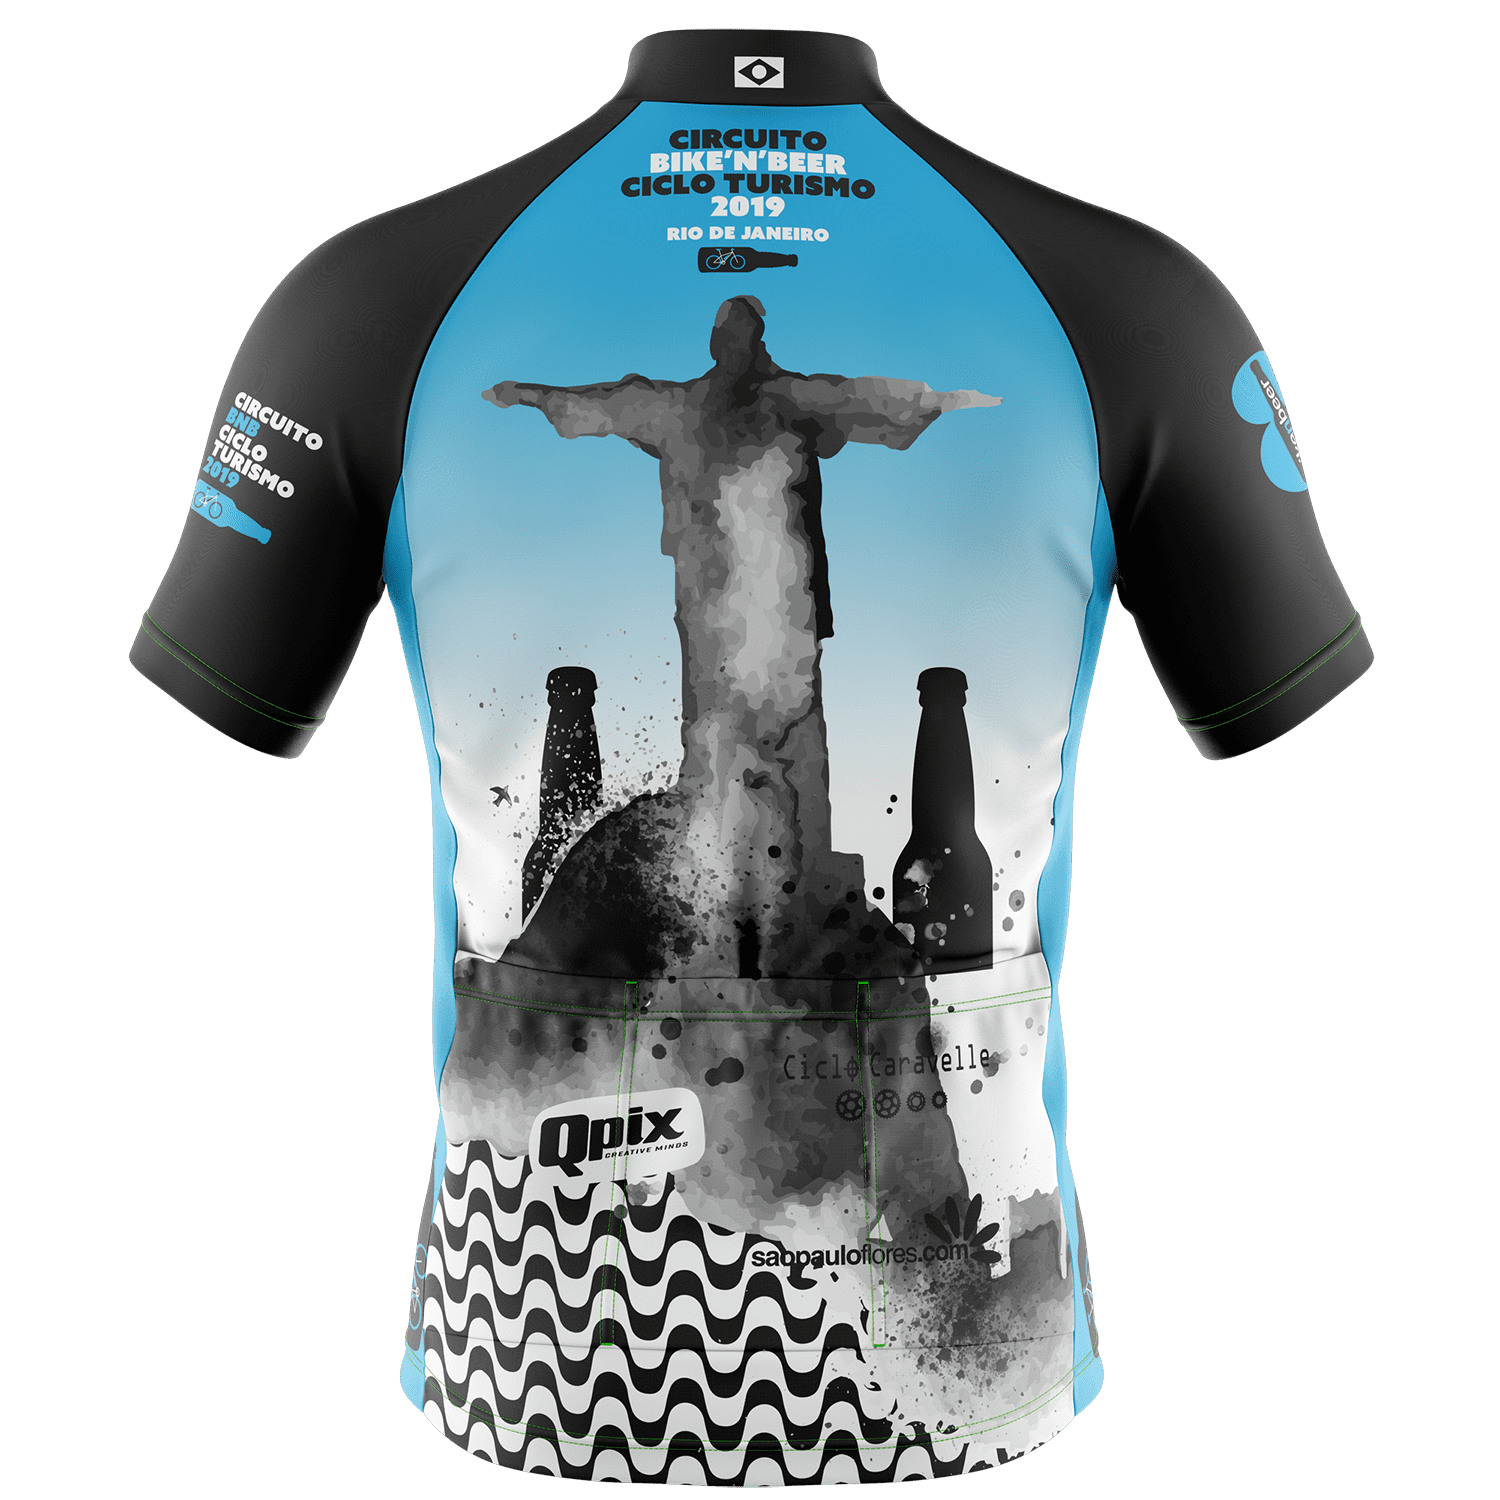 Jersey Oficial para viagem de cicloturismo Bike and Beer para o Rio de Janeiro - 2019.